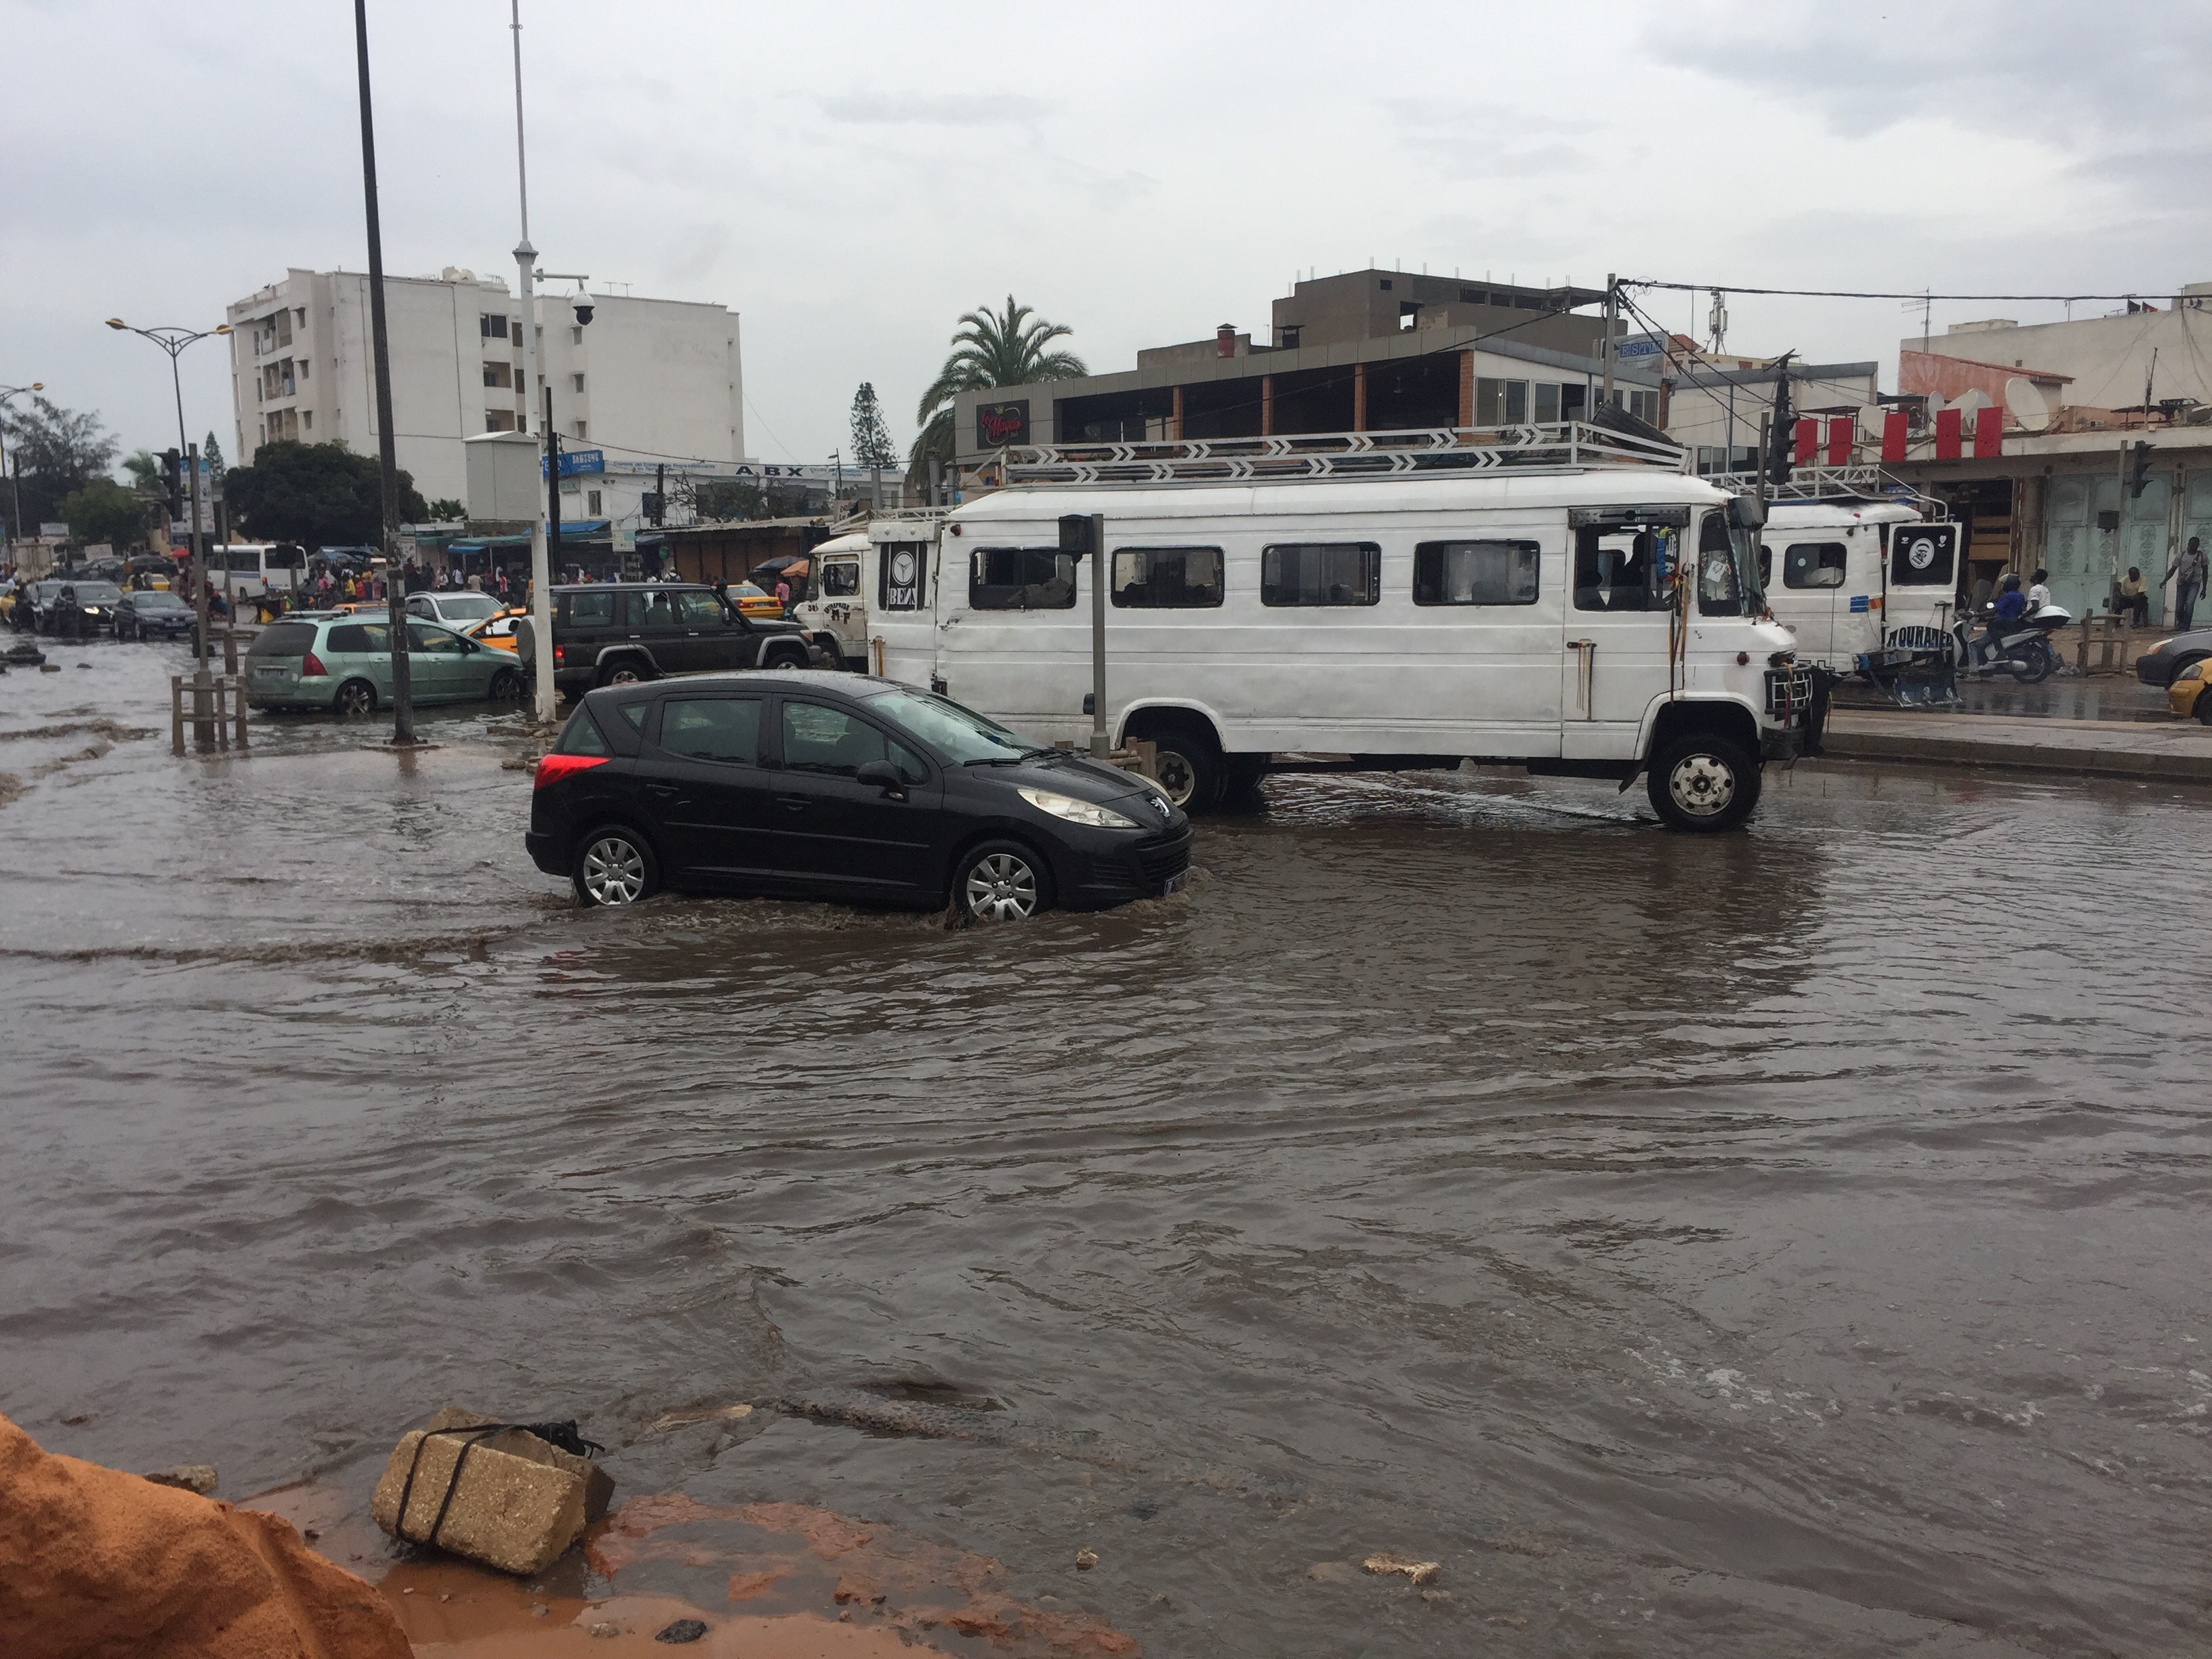 Précipitations à Dakar : La capitale « nage » sous les eaux !